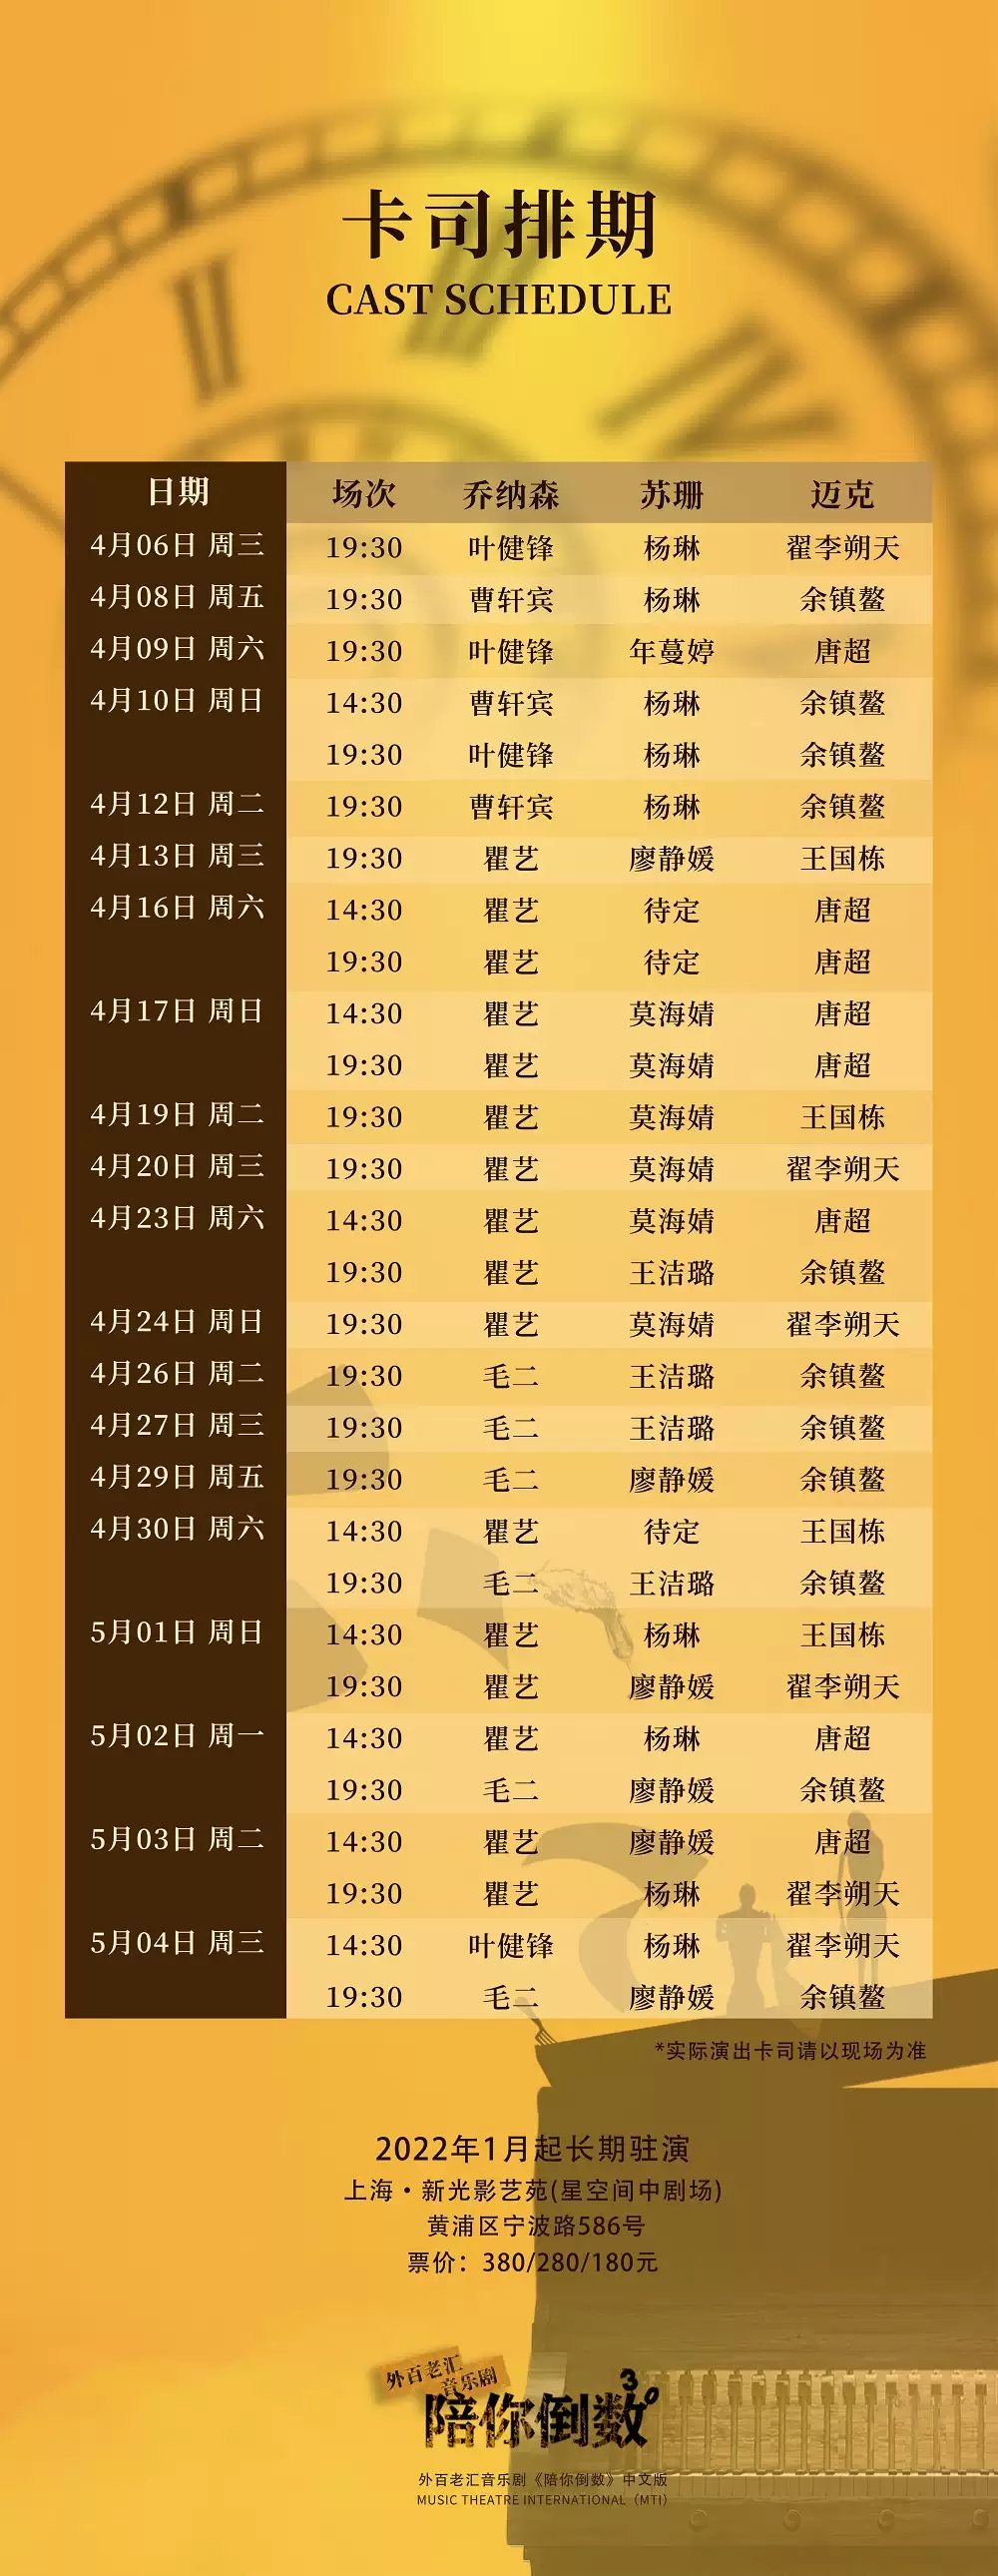 2022外百老汇音乐剧《陪你倒数》中文版-上海站